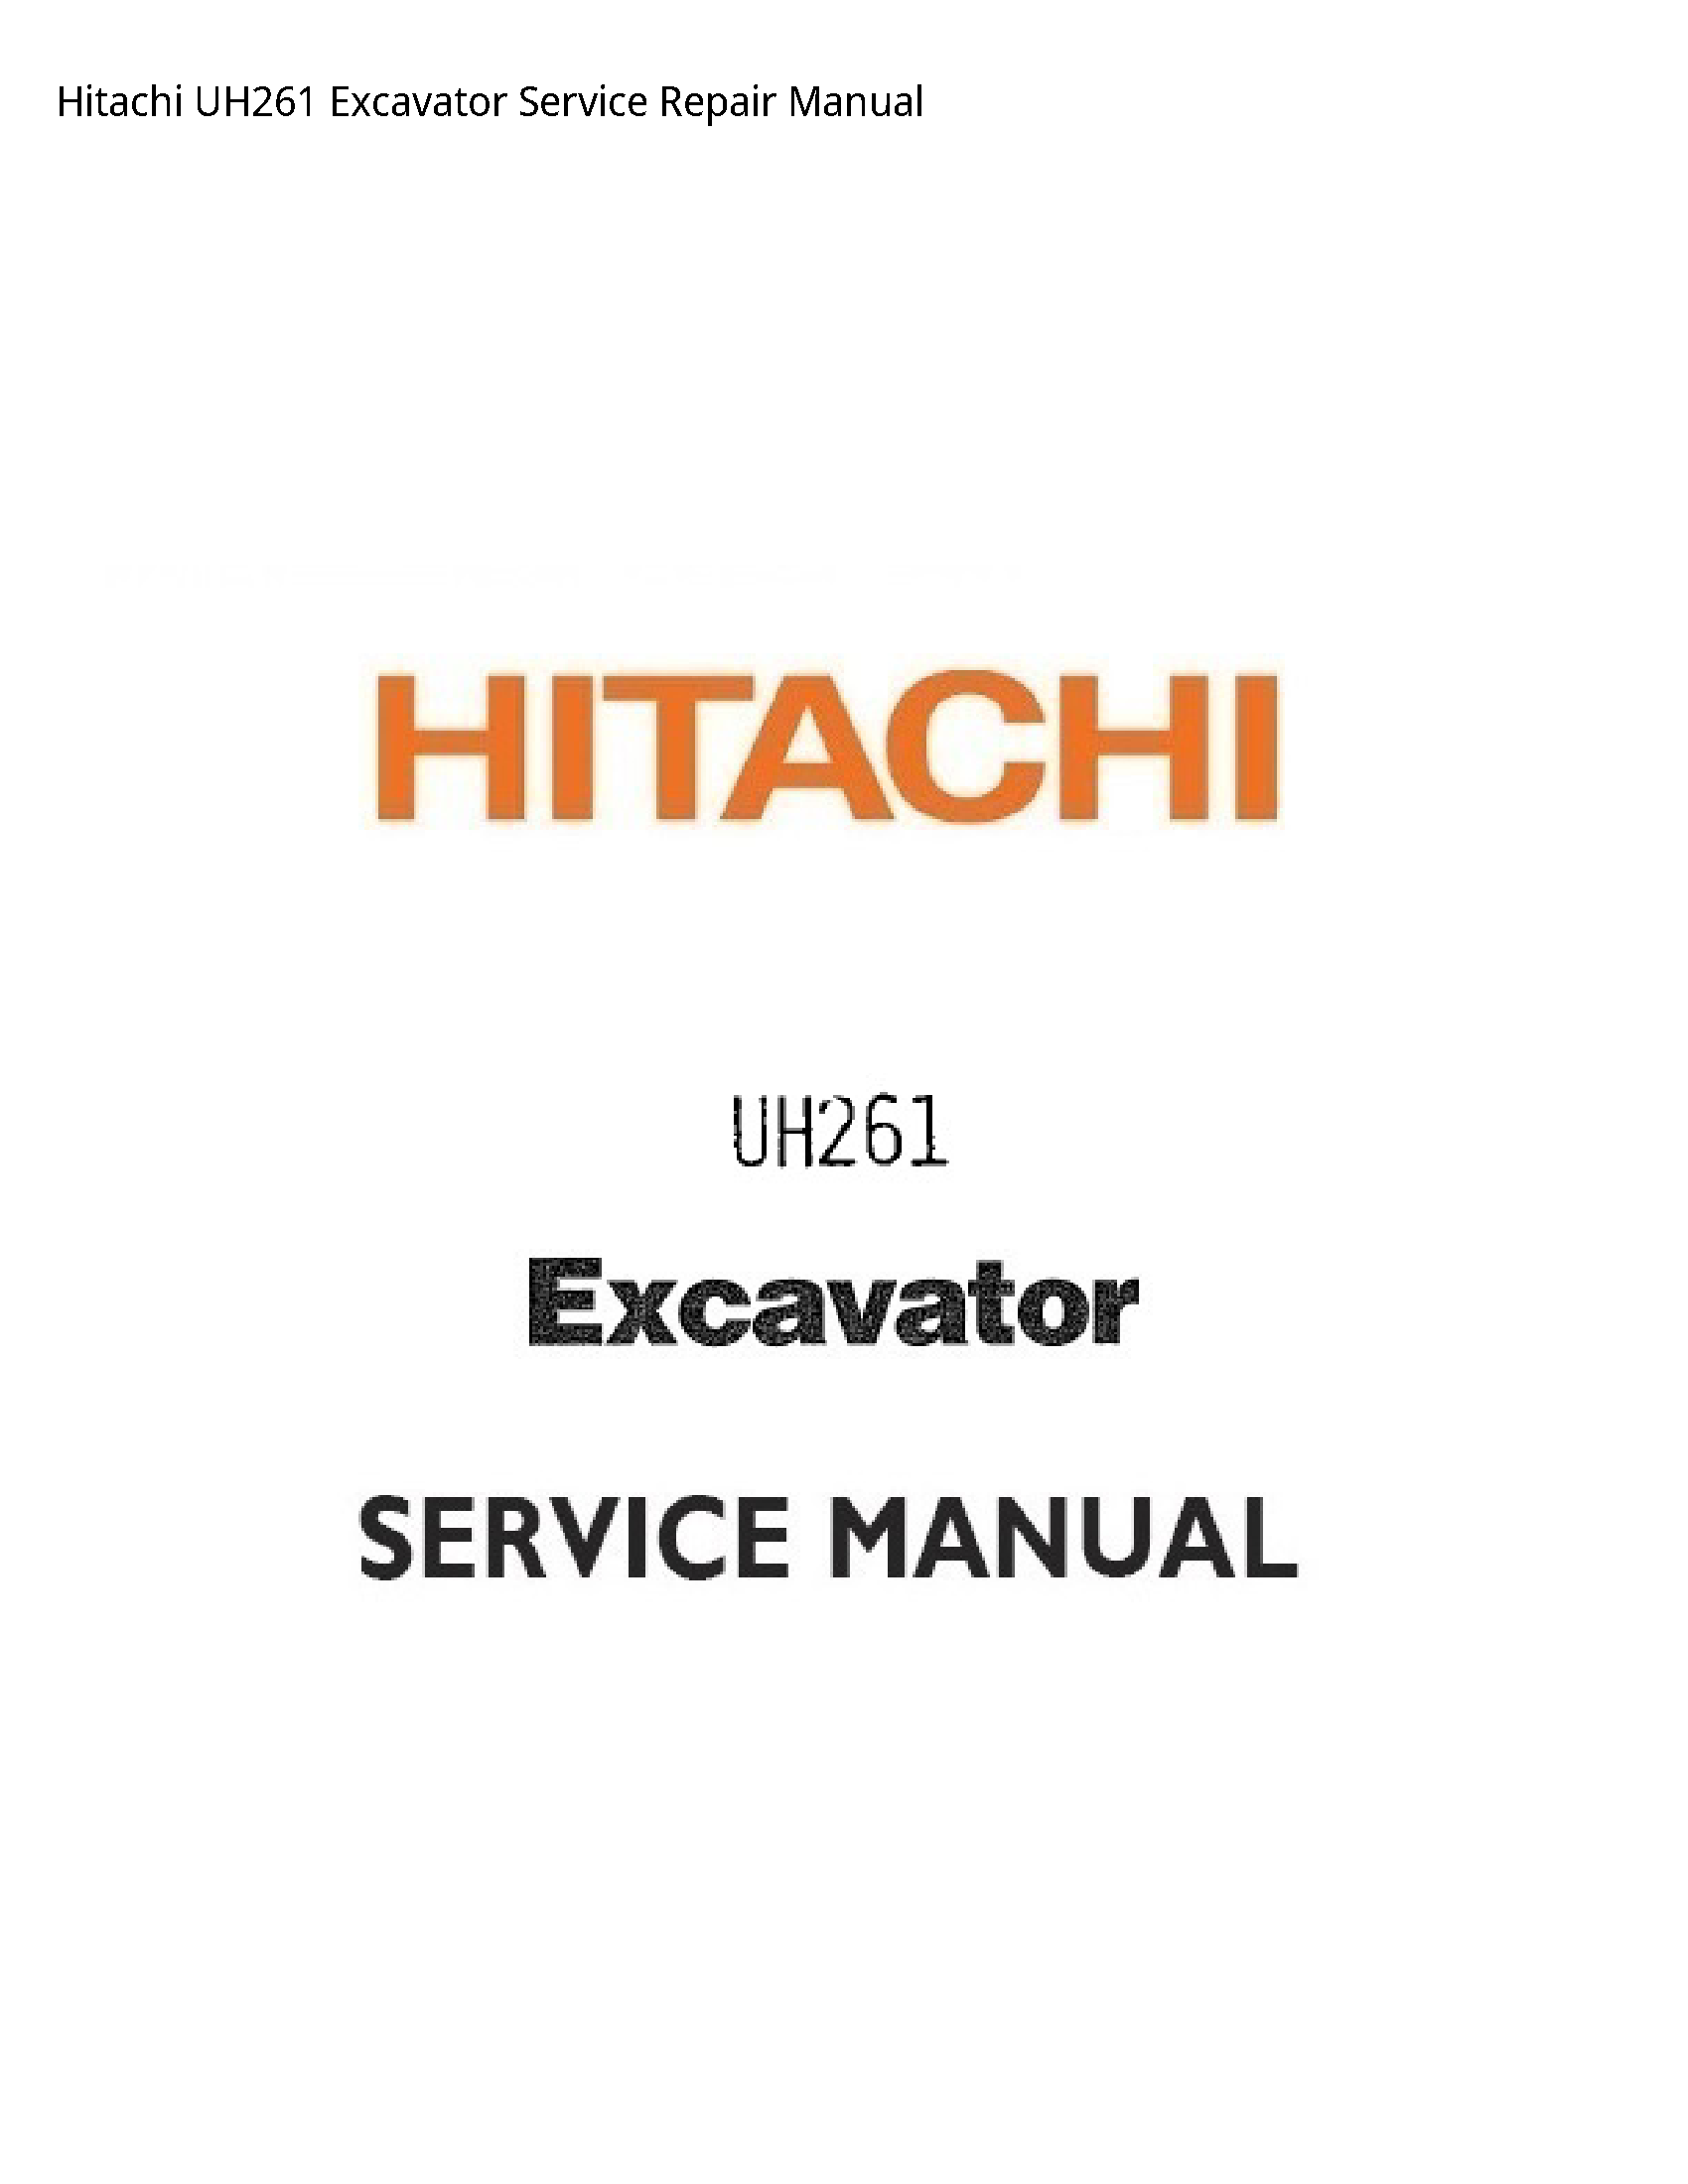 Hitachi UH261 Excavator manual